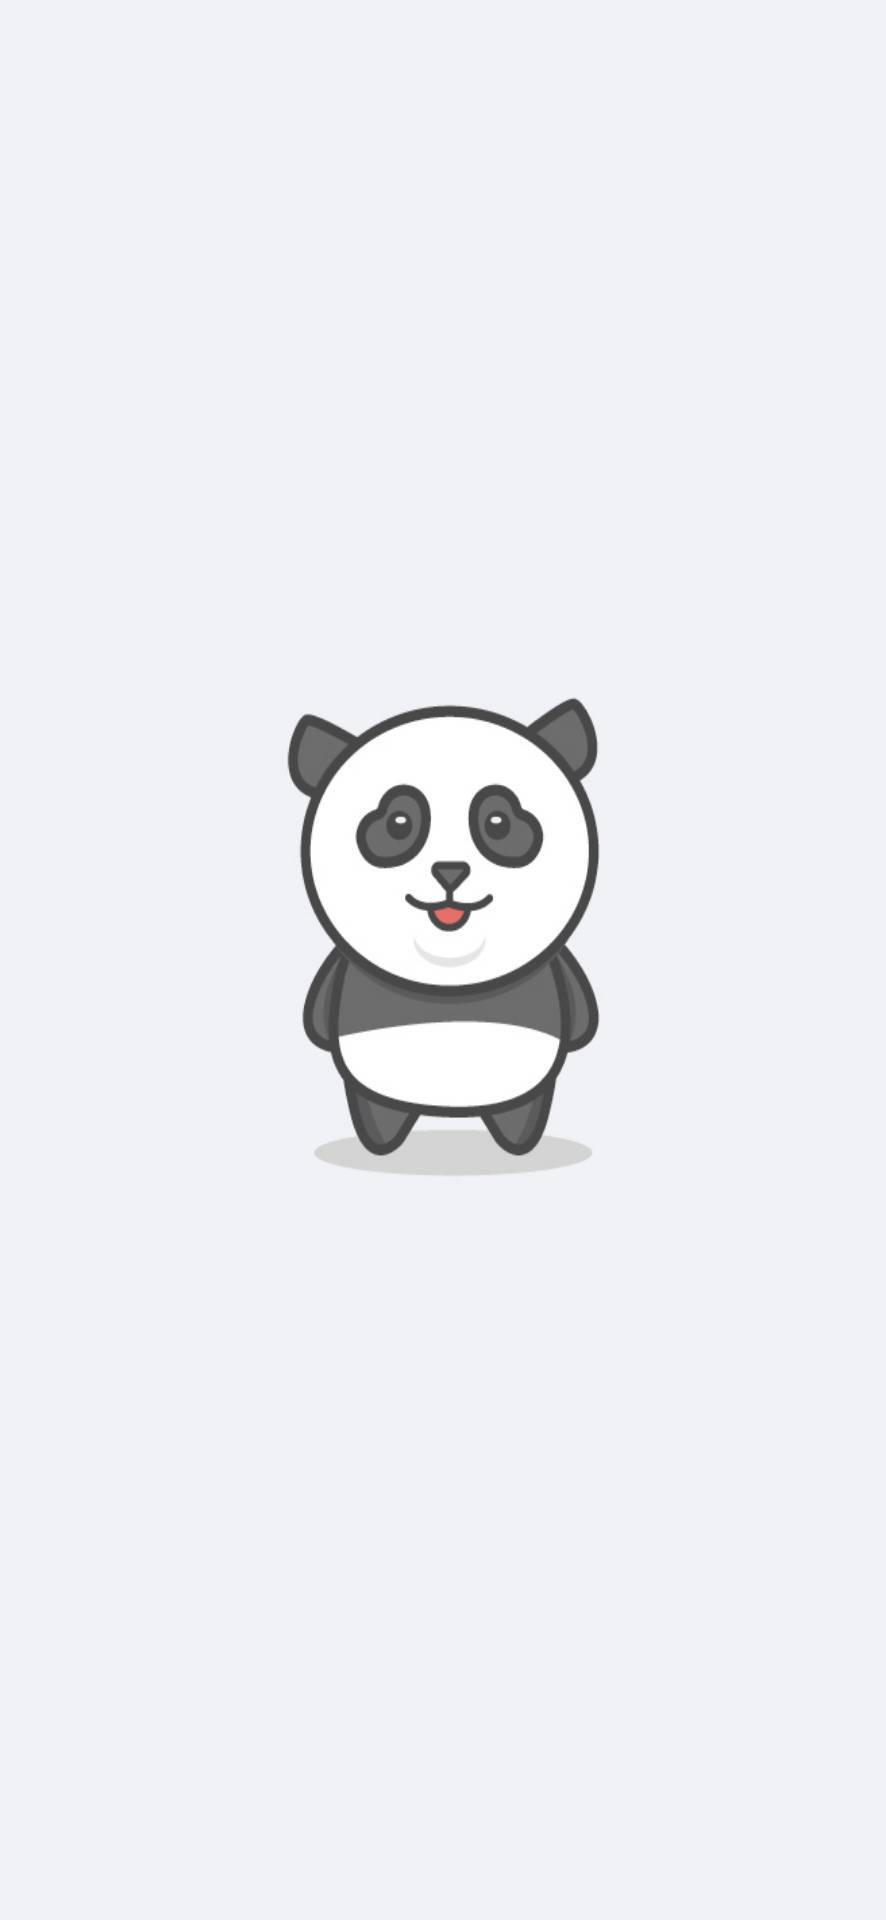 Download Minimal Panda Cute Android Wallpaper | Wallpapers.com